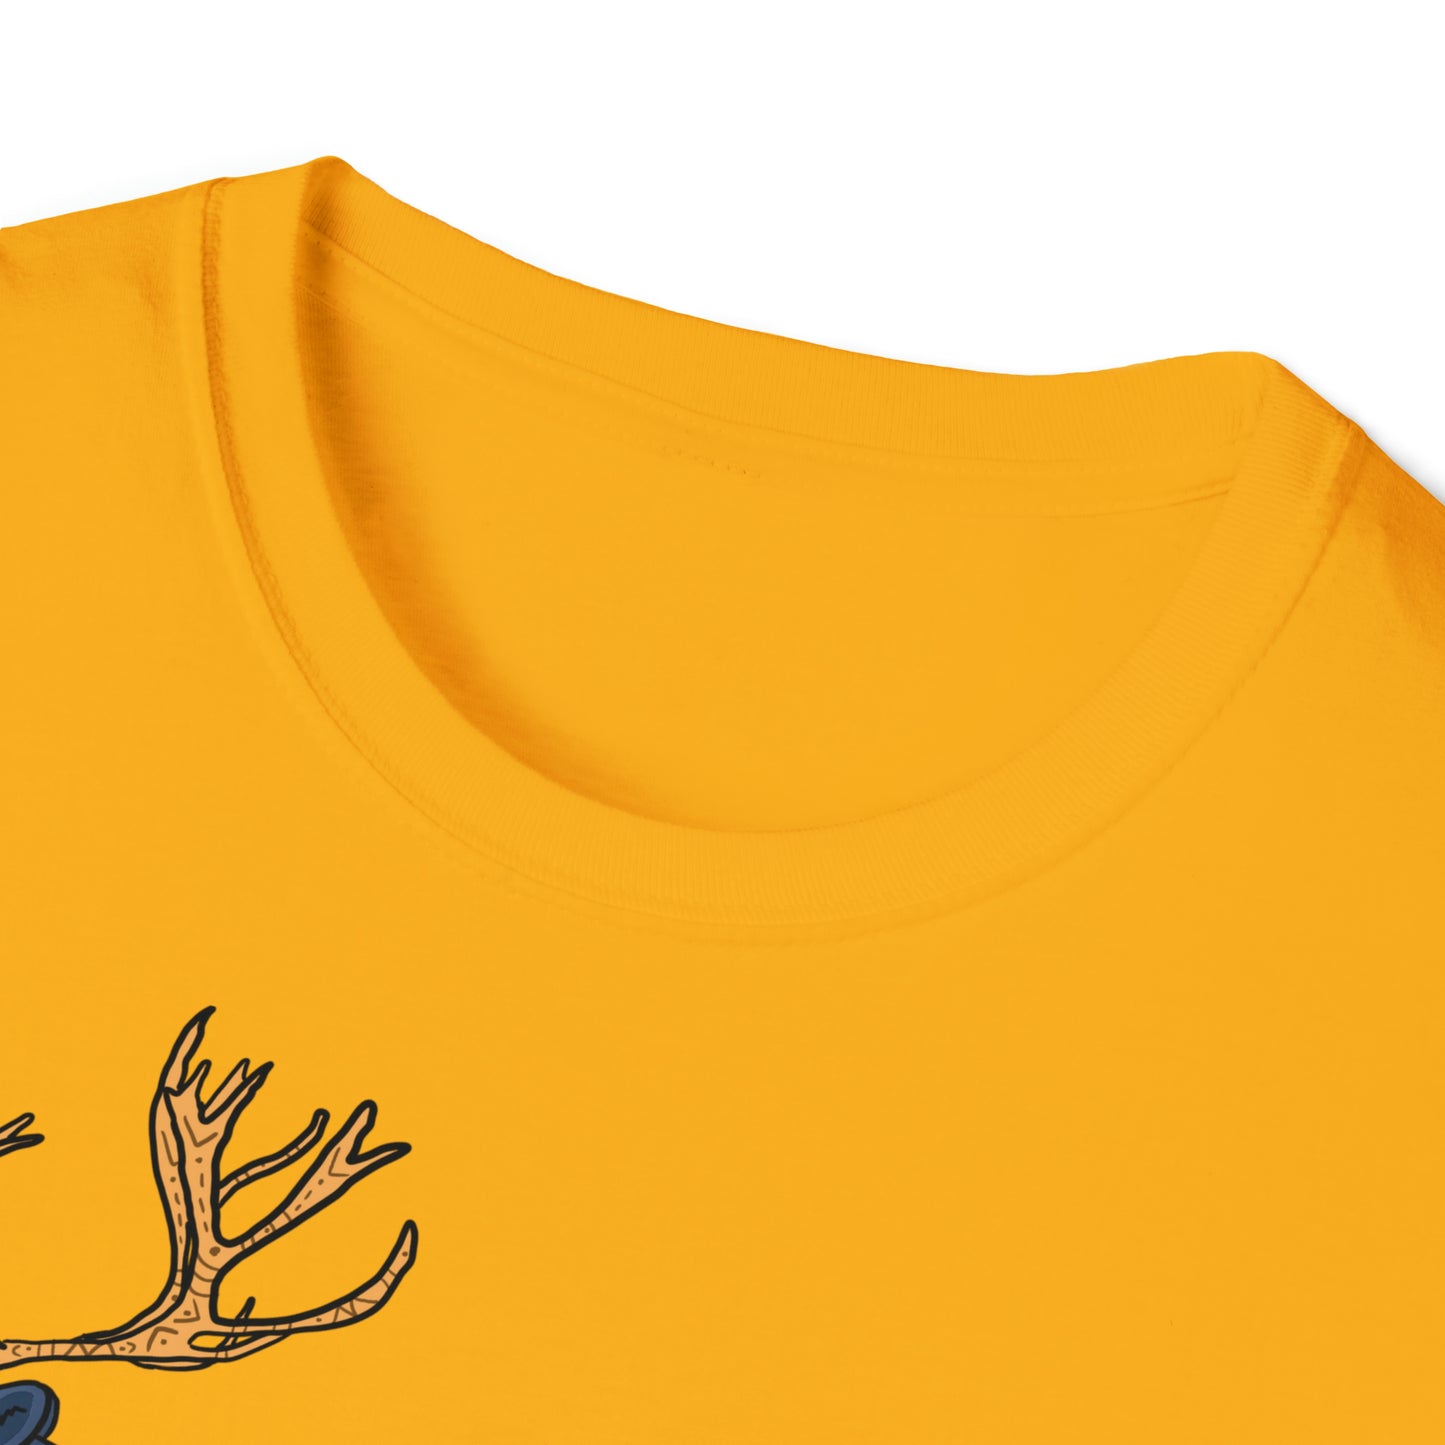 Big Land Caribou - Unisex Softstyle T-Shirt